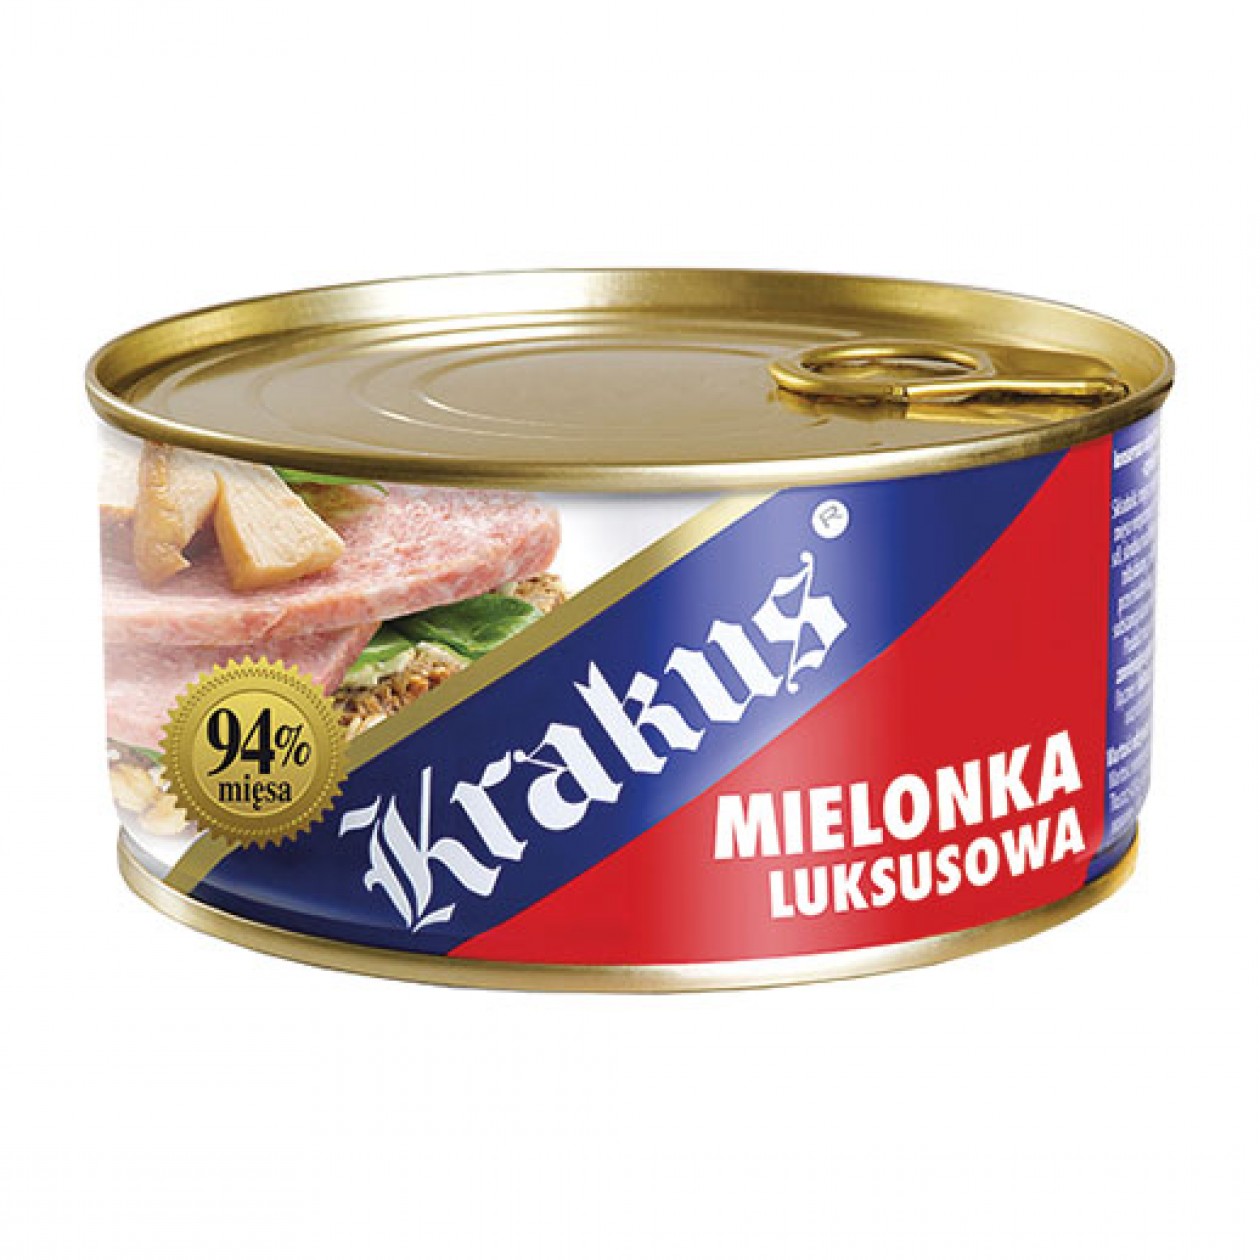 Krakus Canned Meat Mielonka (7) 6x300g